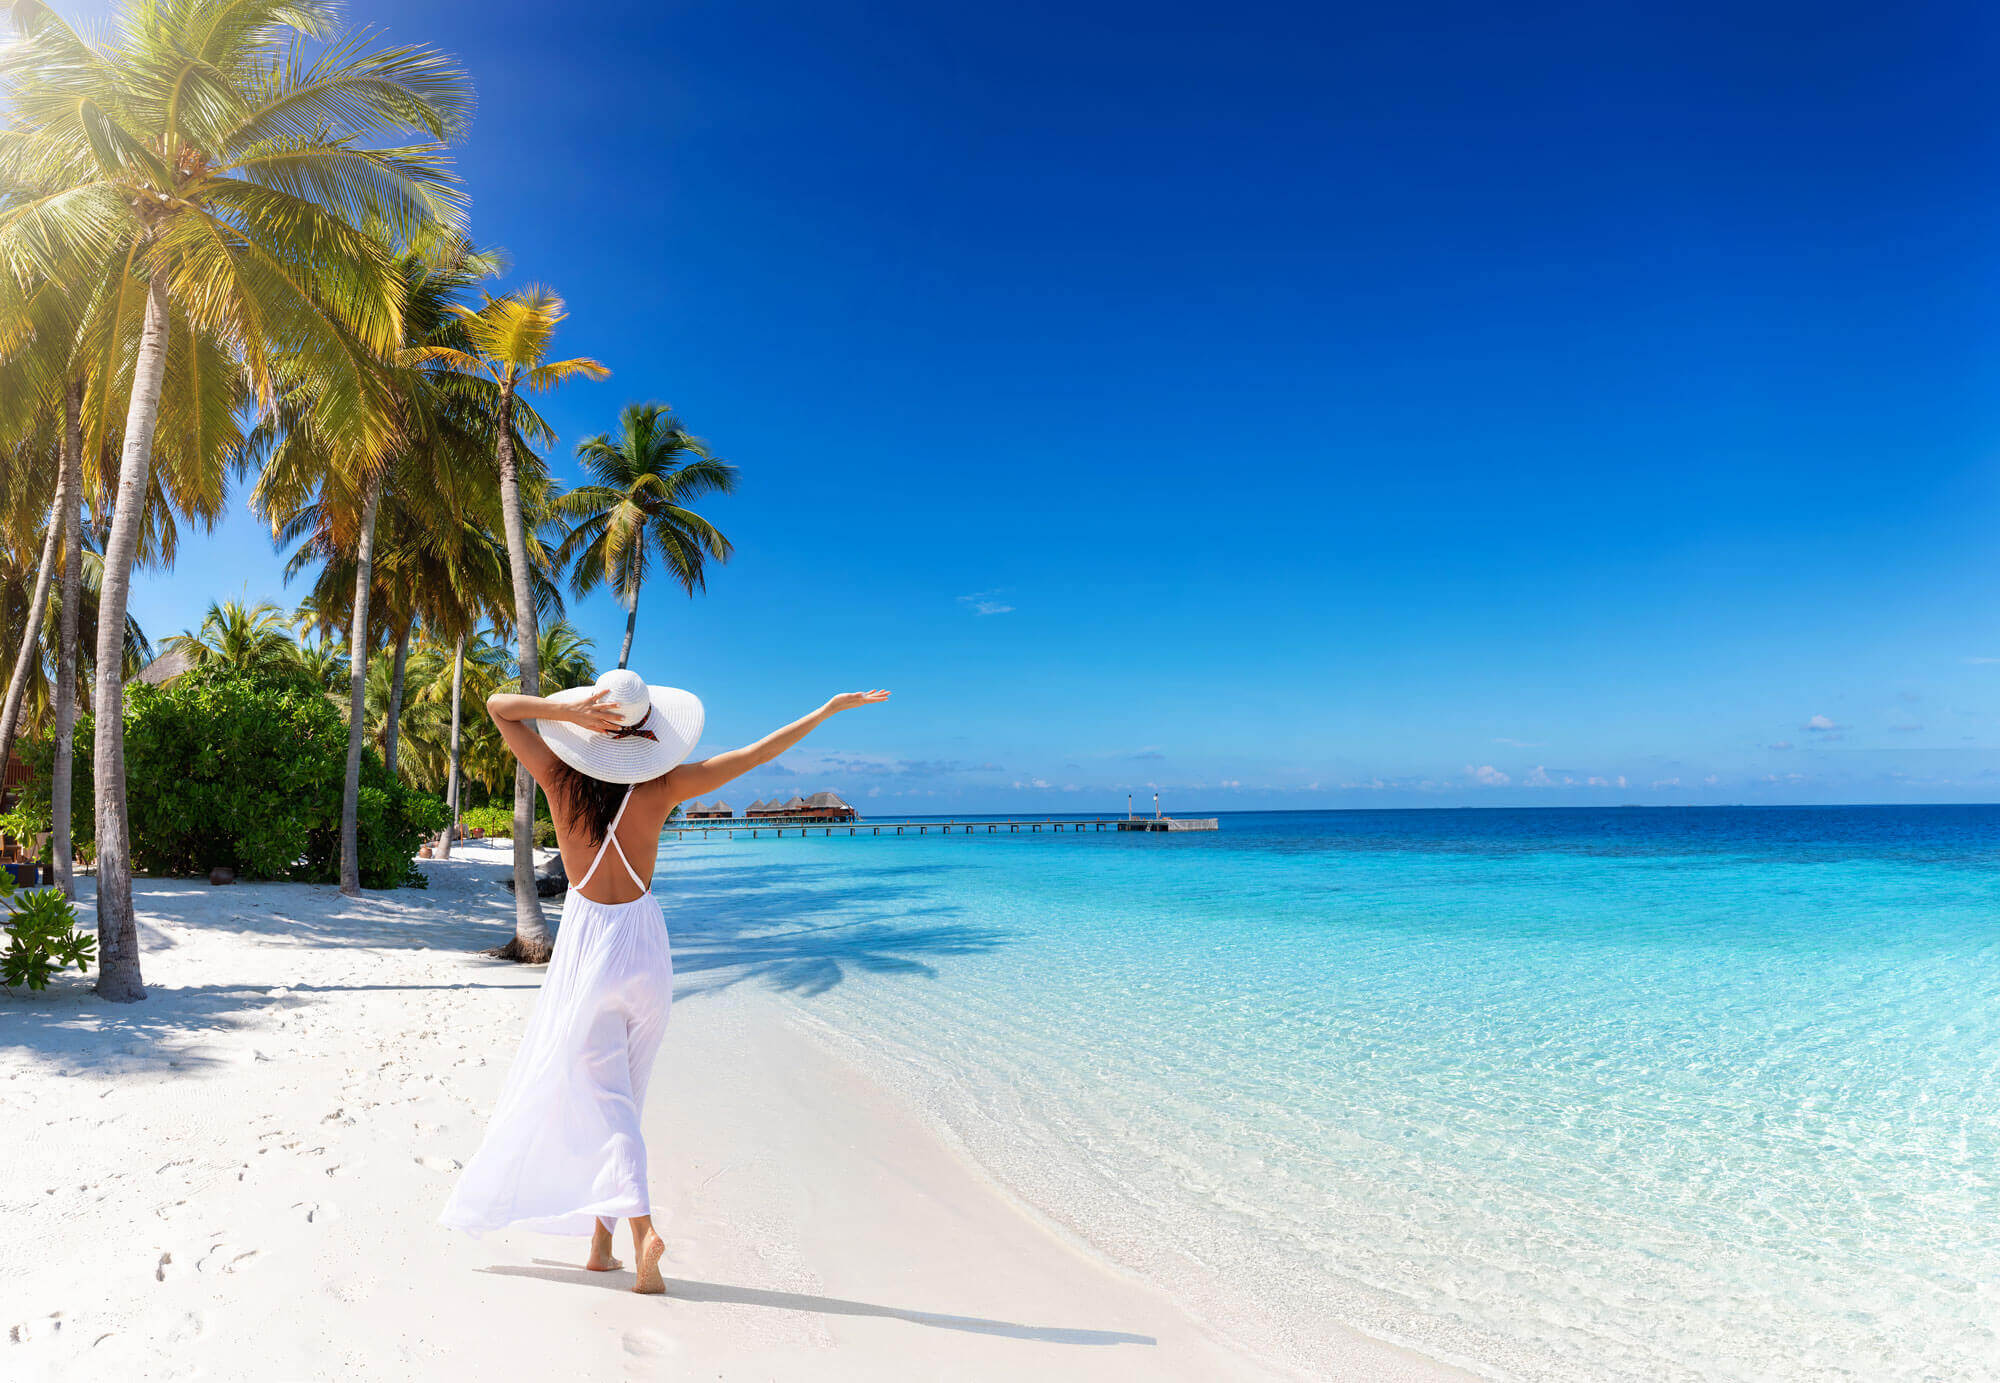 Malediven Urlaub-Frau im weißen Kleid am Strand neben dem türkisblauen Meer.